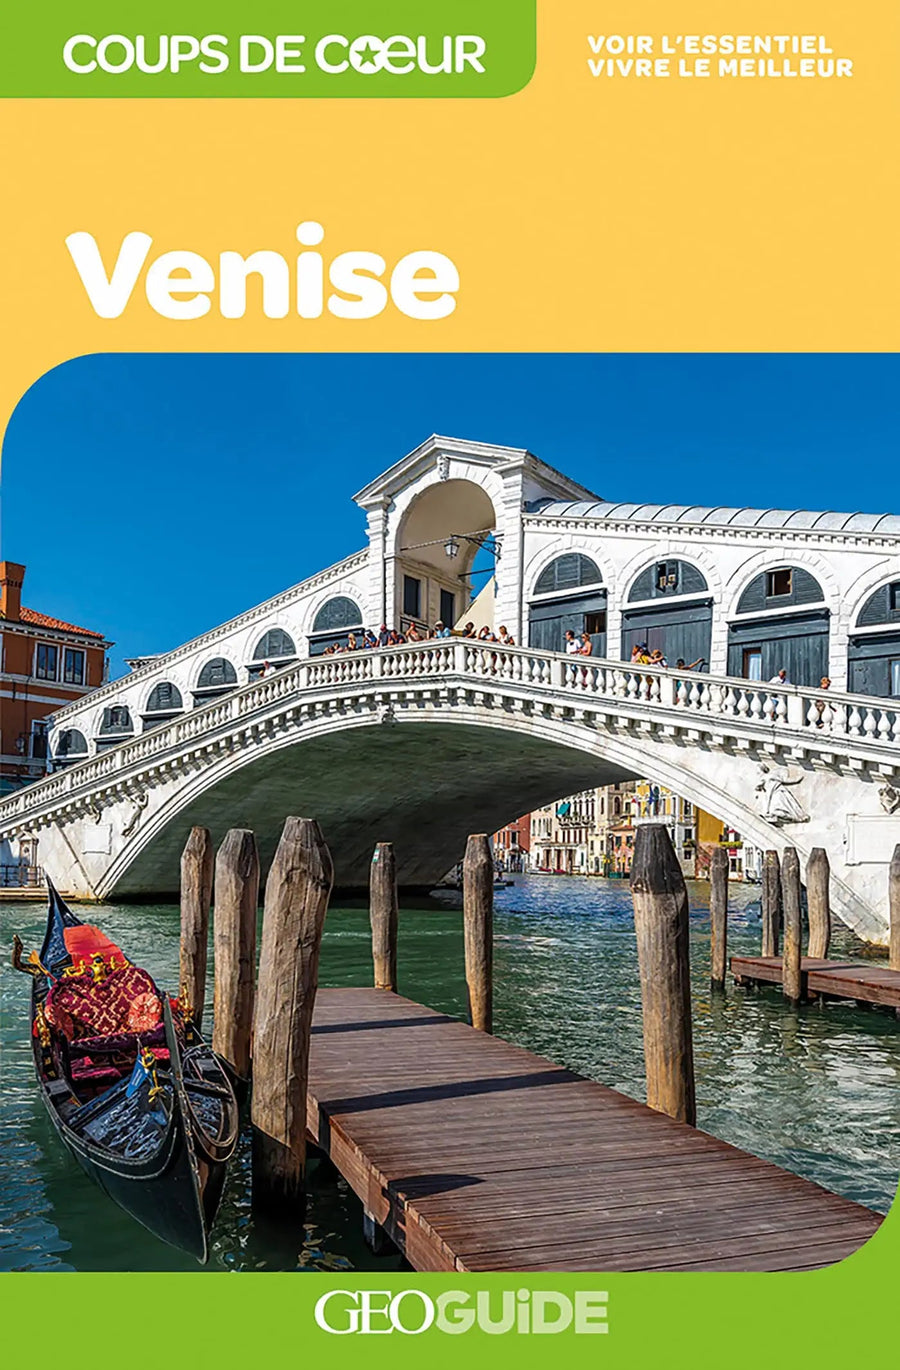 Géoguide (coups de coeur) - Venise | Gallimard guide de voyage Gallimard 